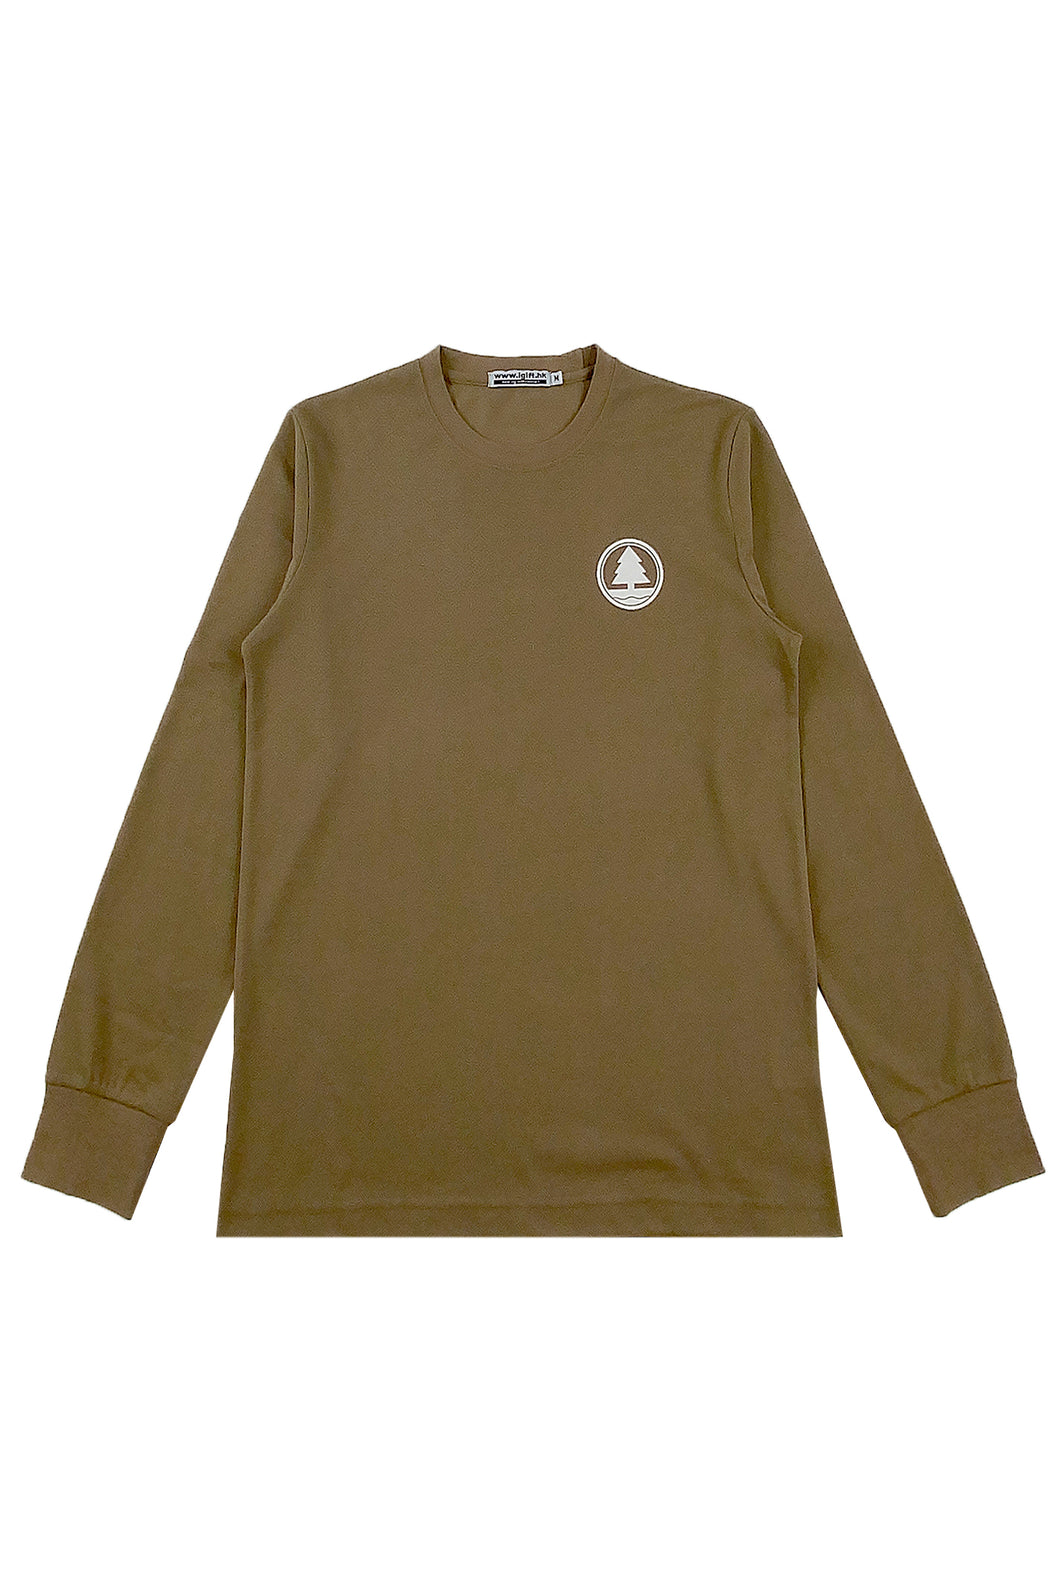 訂製軍綠色長袖T恤  圓領T恤設計  T1123